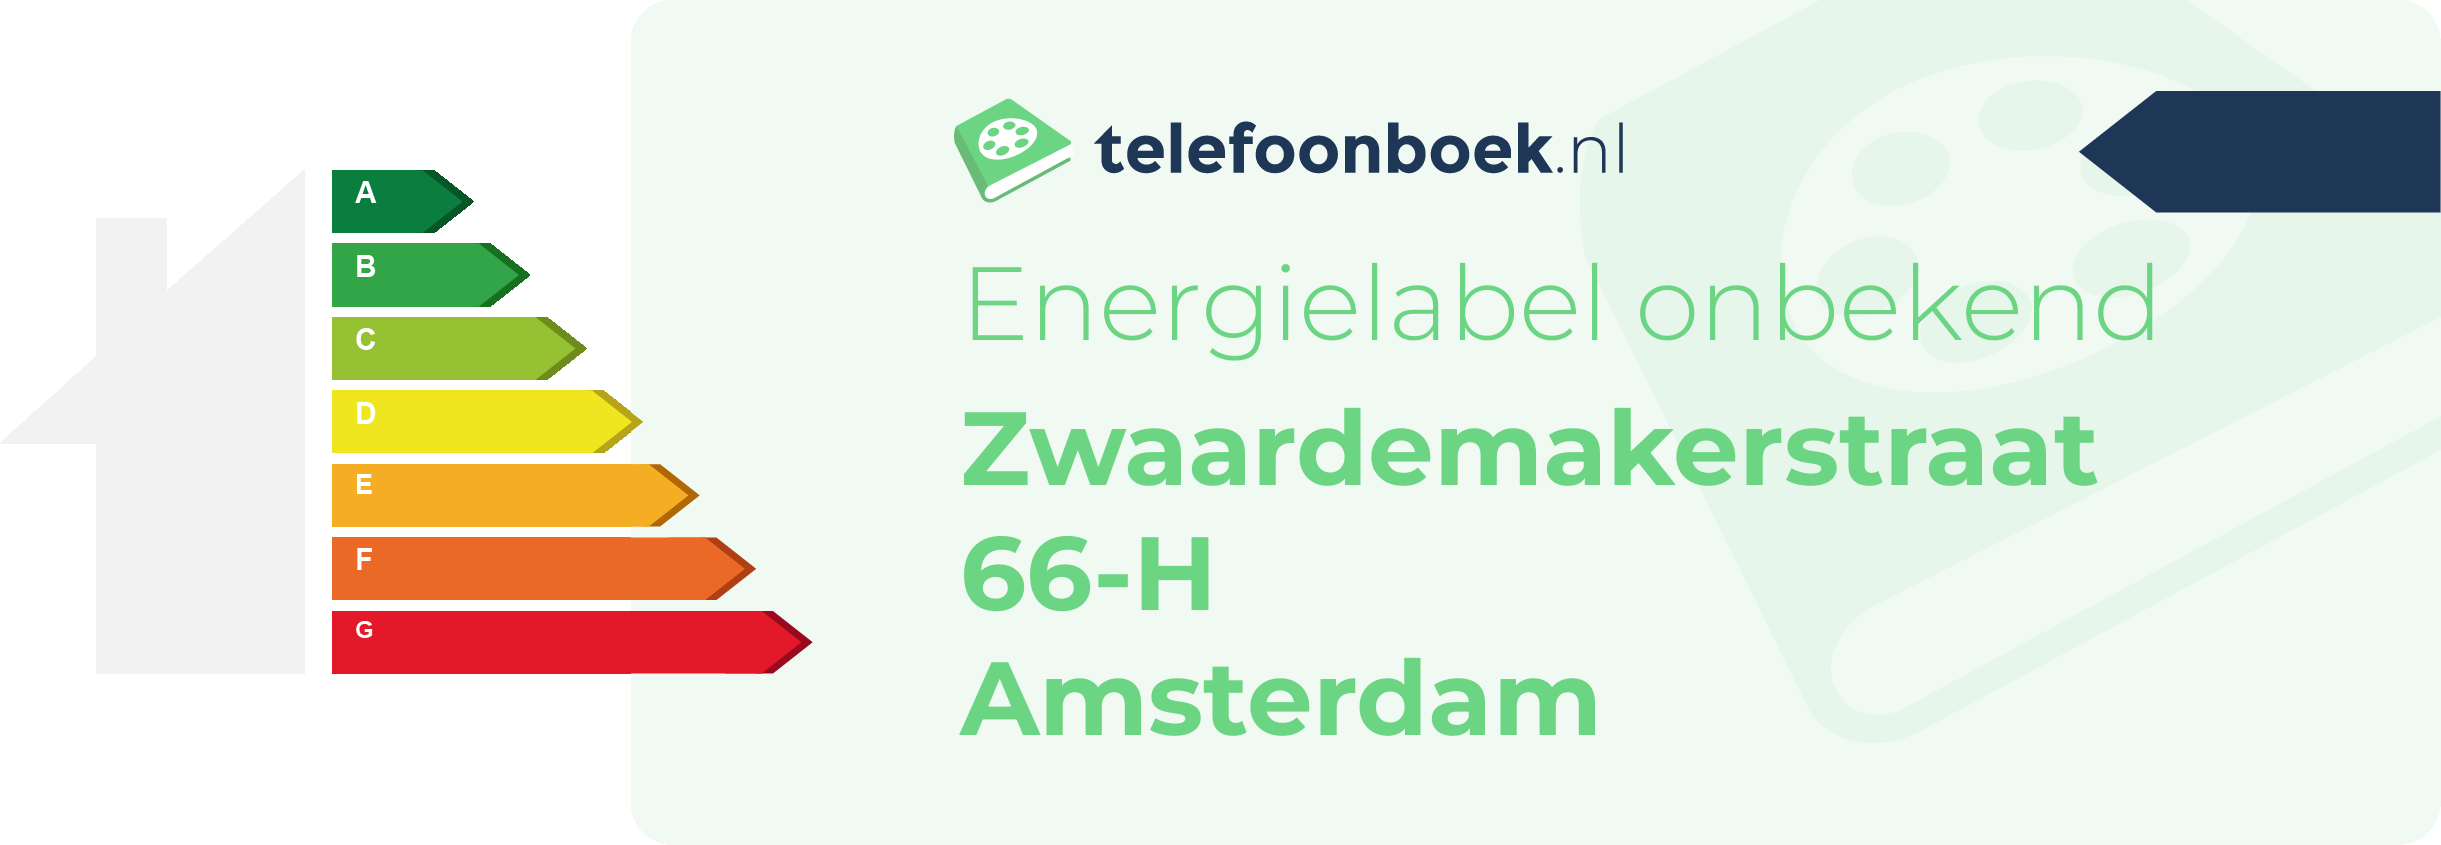 Energielabel Zwaardemakerstraat 66-H Amsterdam